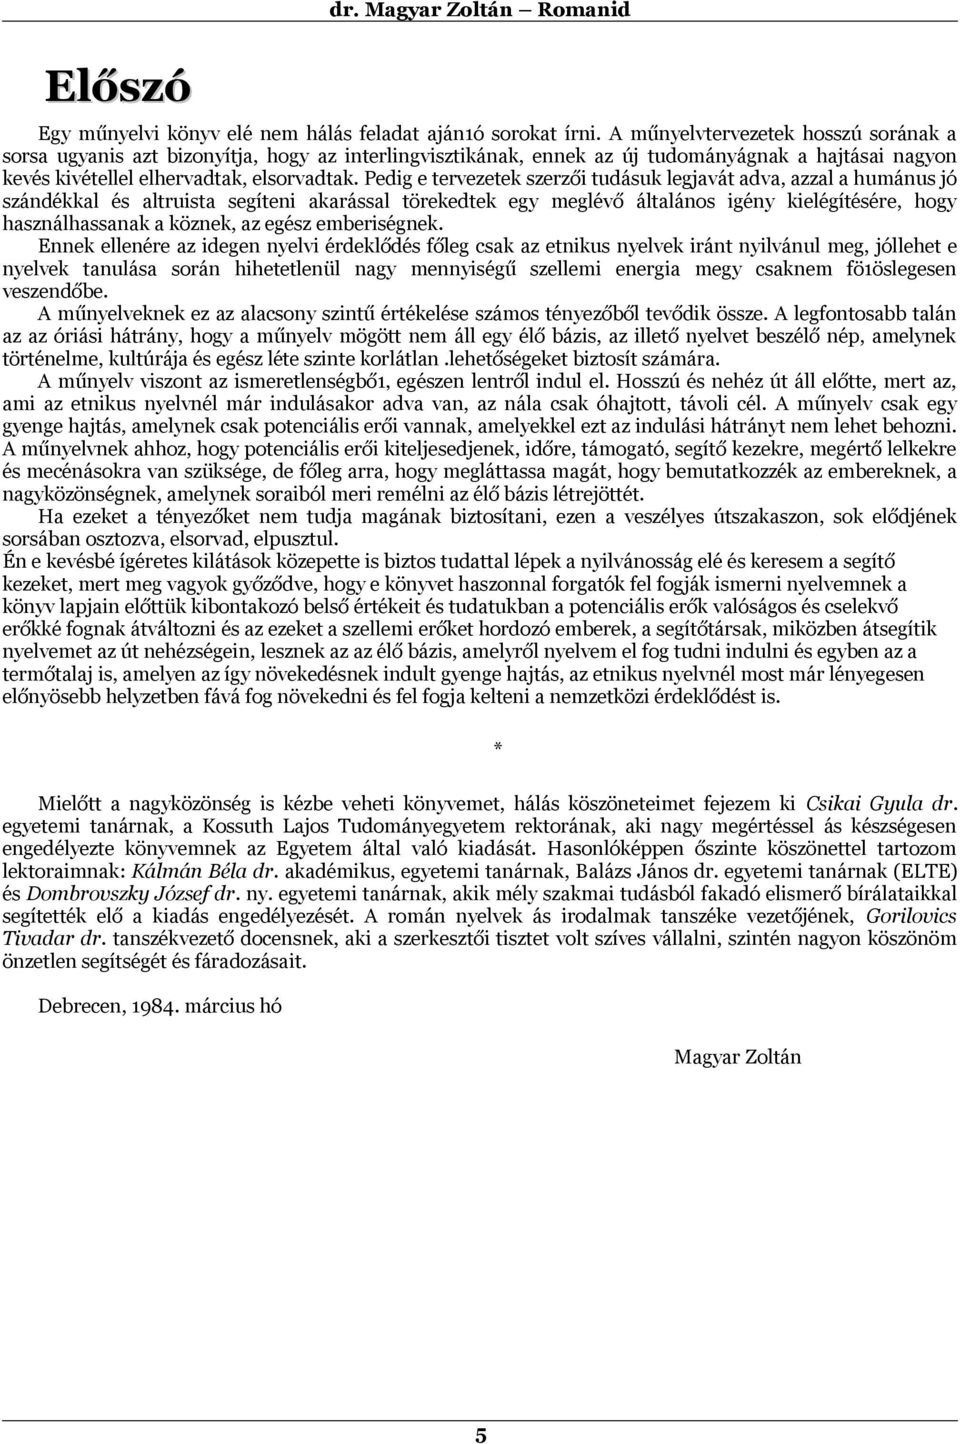 dr. Magyar Zoltán ROMANID Tájékoztató és társalgási könyv - PDF Free  Download